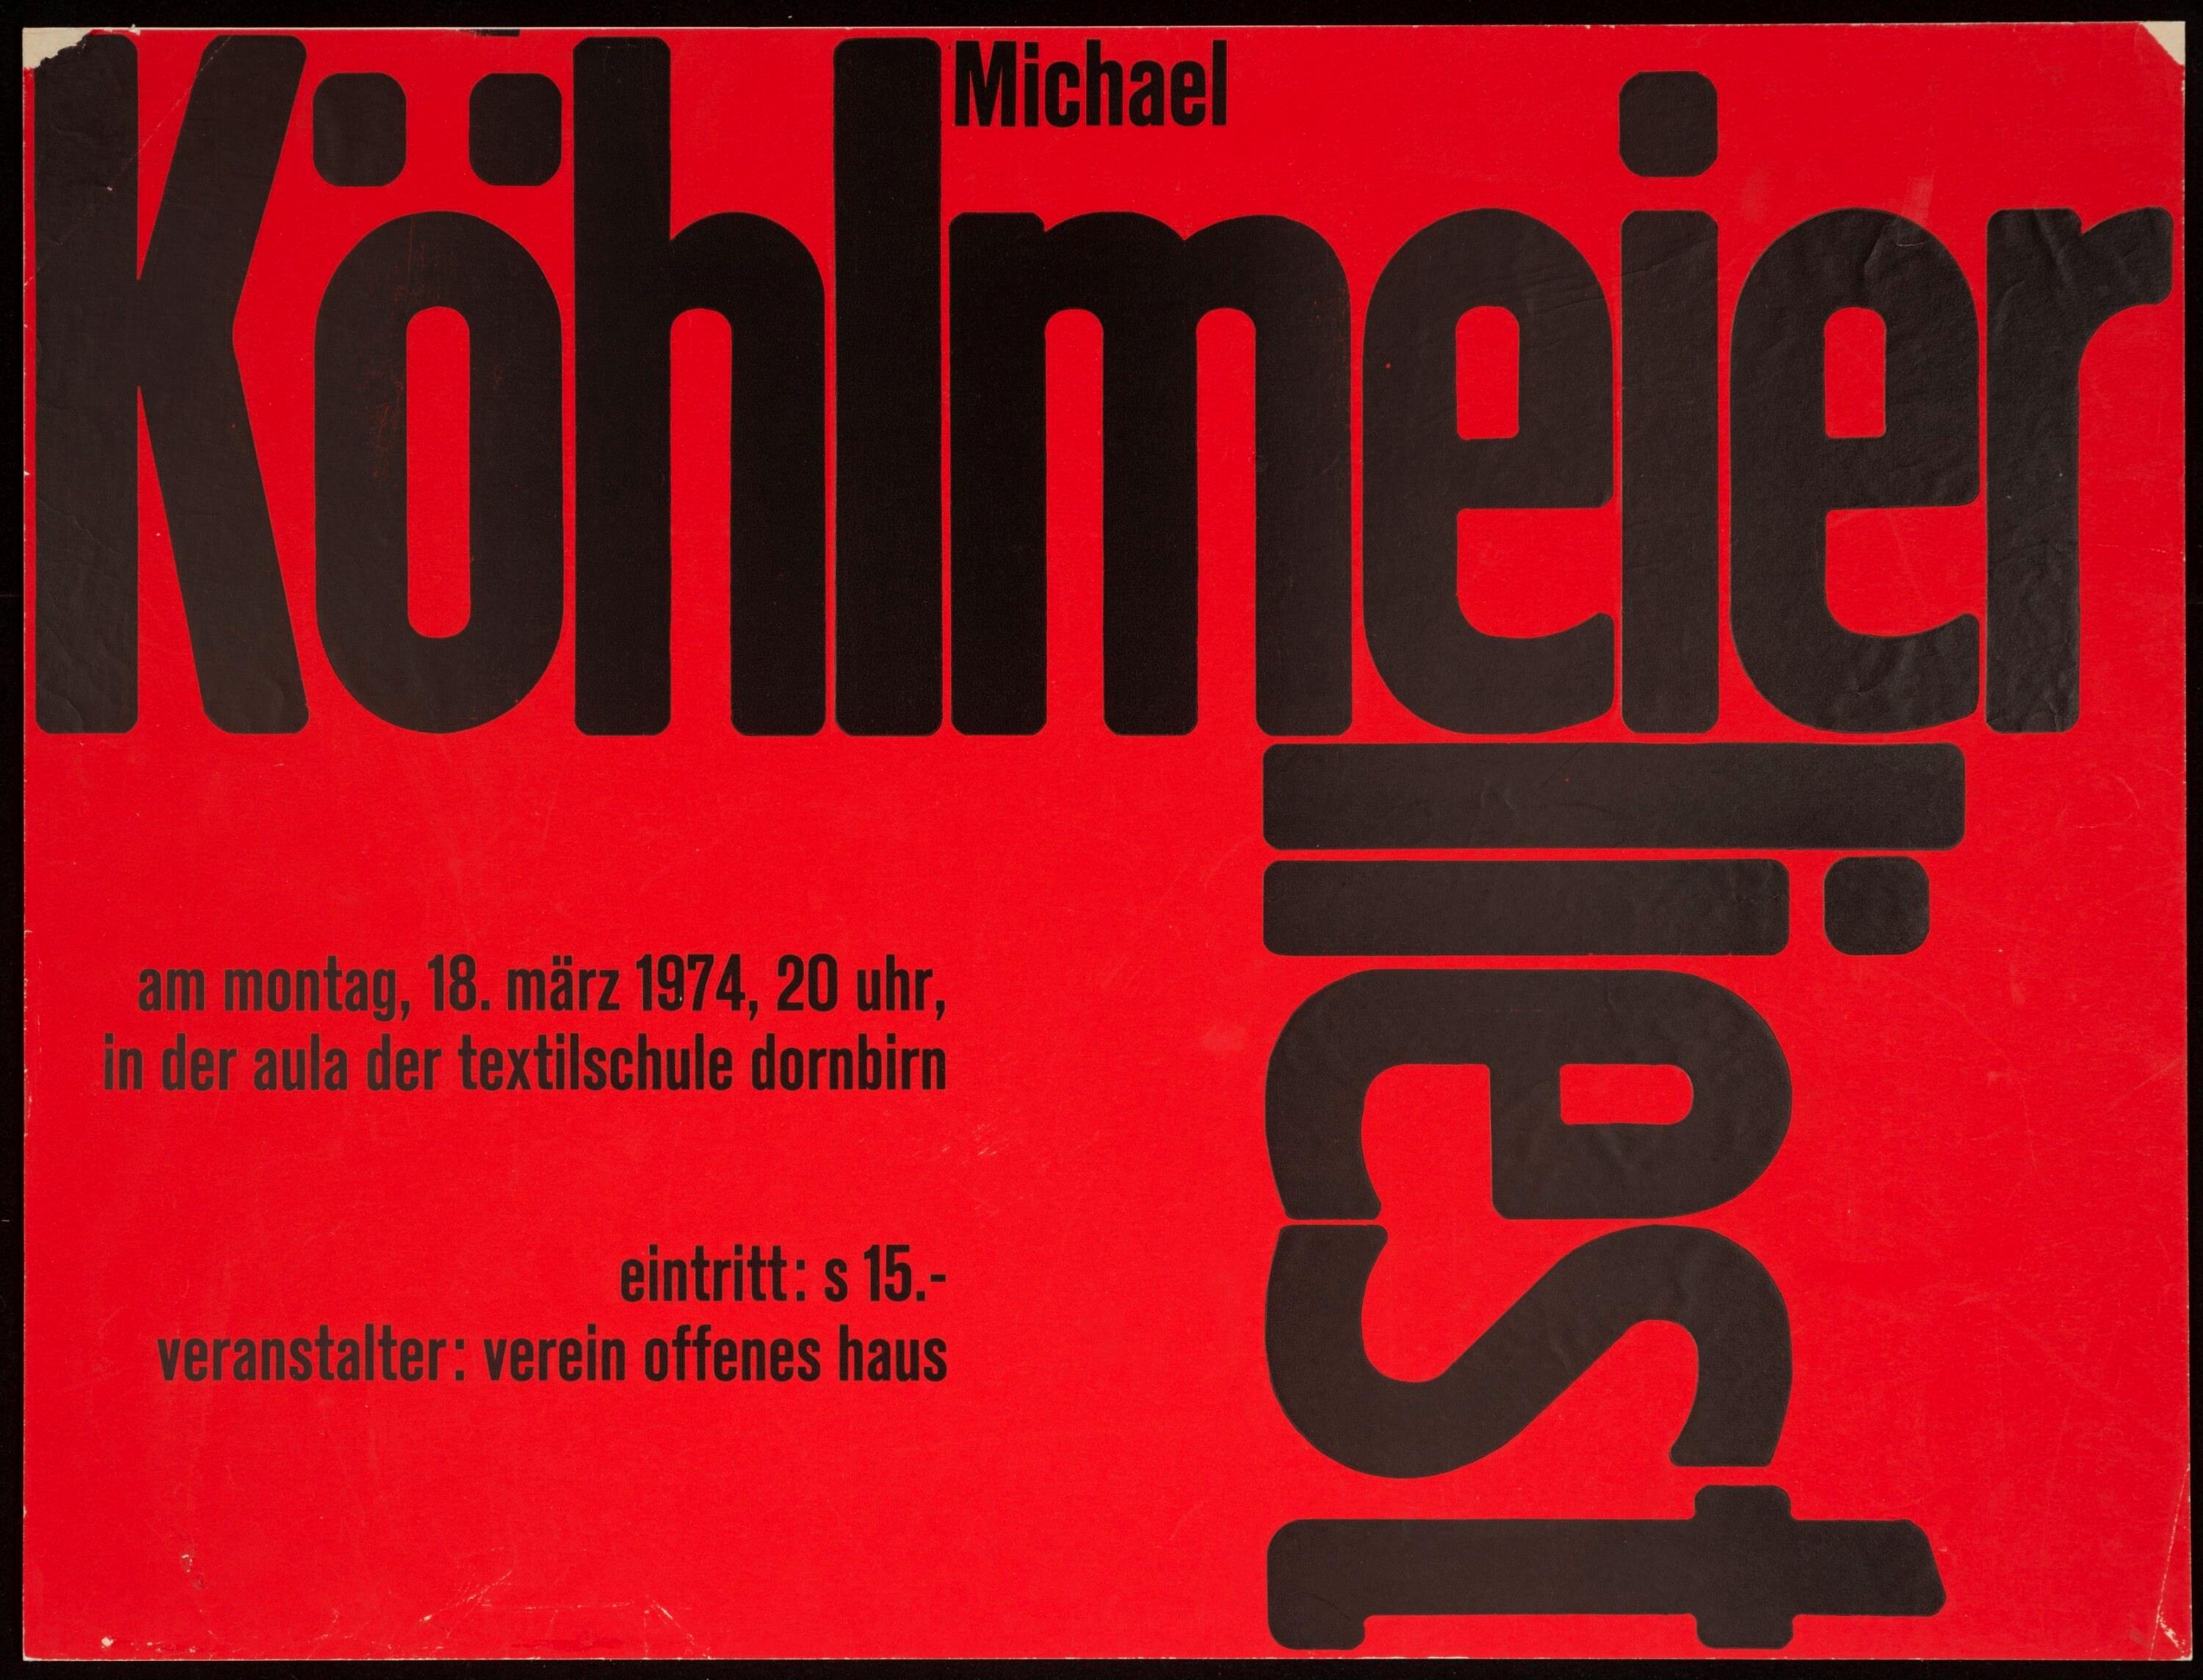 Michael Köhlmeier liest></div>


    <hr>
    <div class=